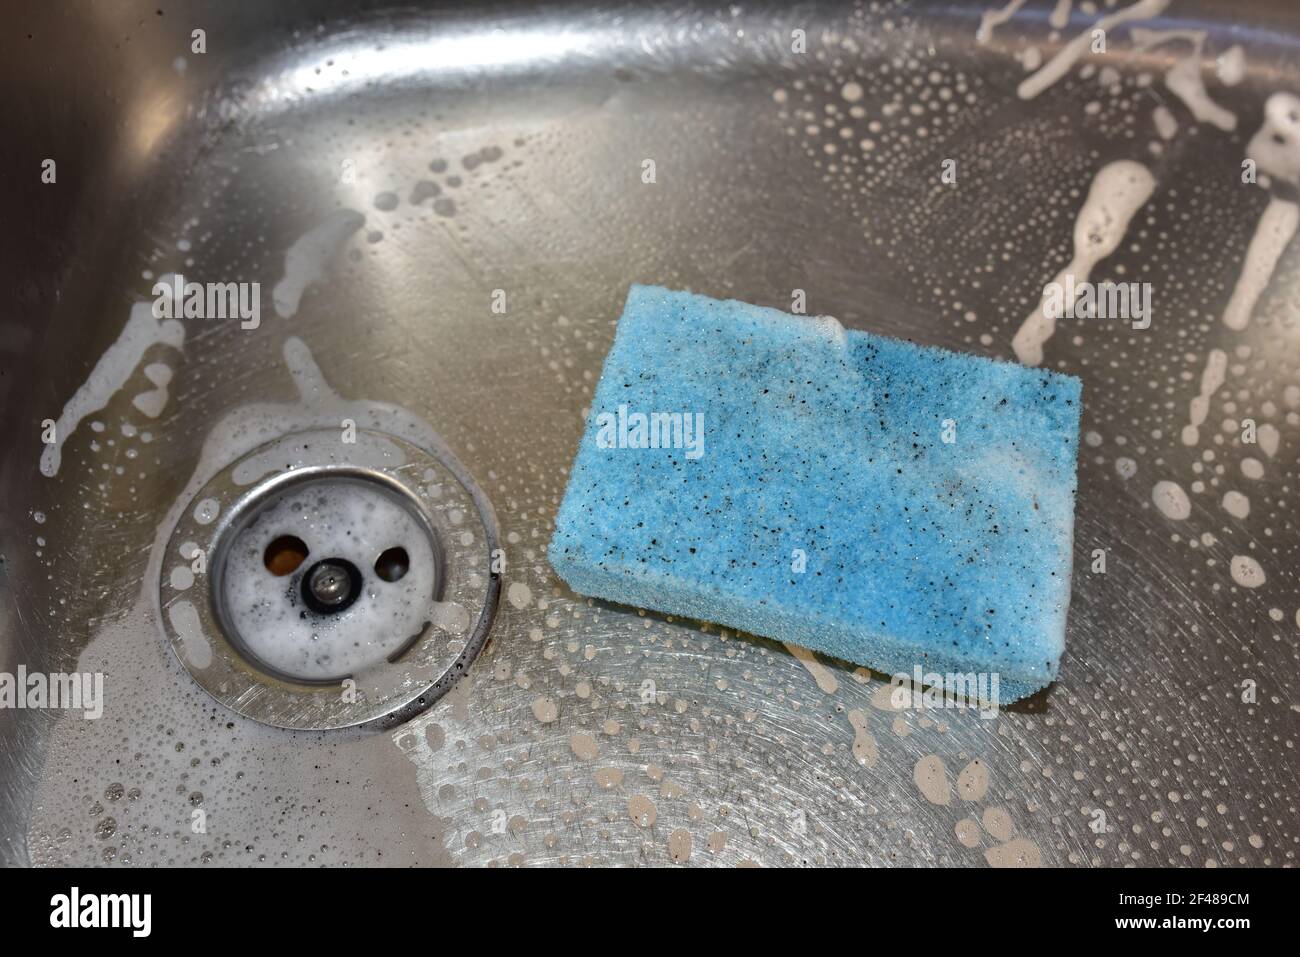 Schwamm mit Waschmittel und Schaum beim Waschen der Spüle in der Küche.  Geschirr und Sanitär waschen. Schwämme zum Waschen und Reinigen von  Schmutz. Entfernen von Greas Stockfotografie - Alamy